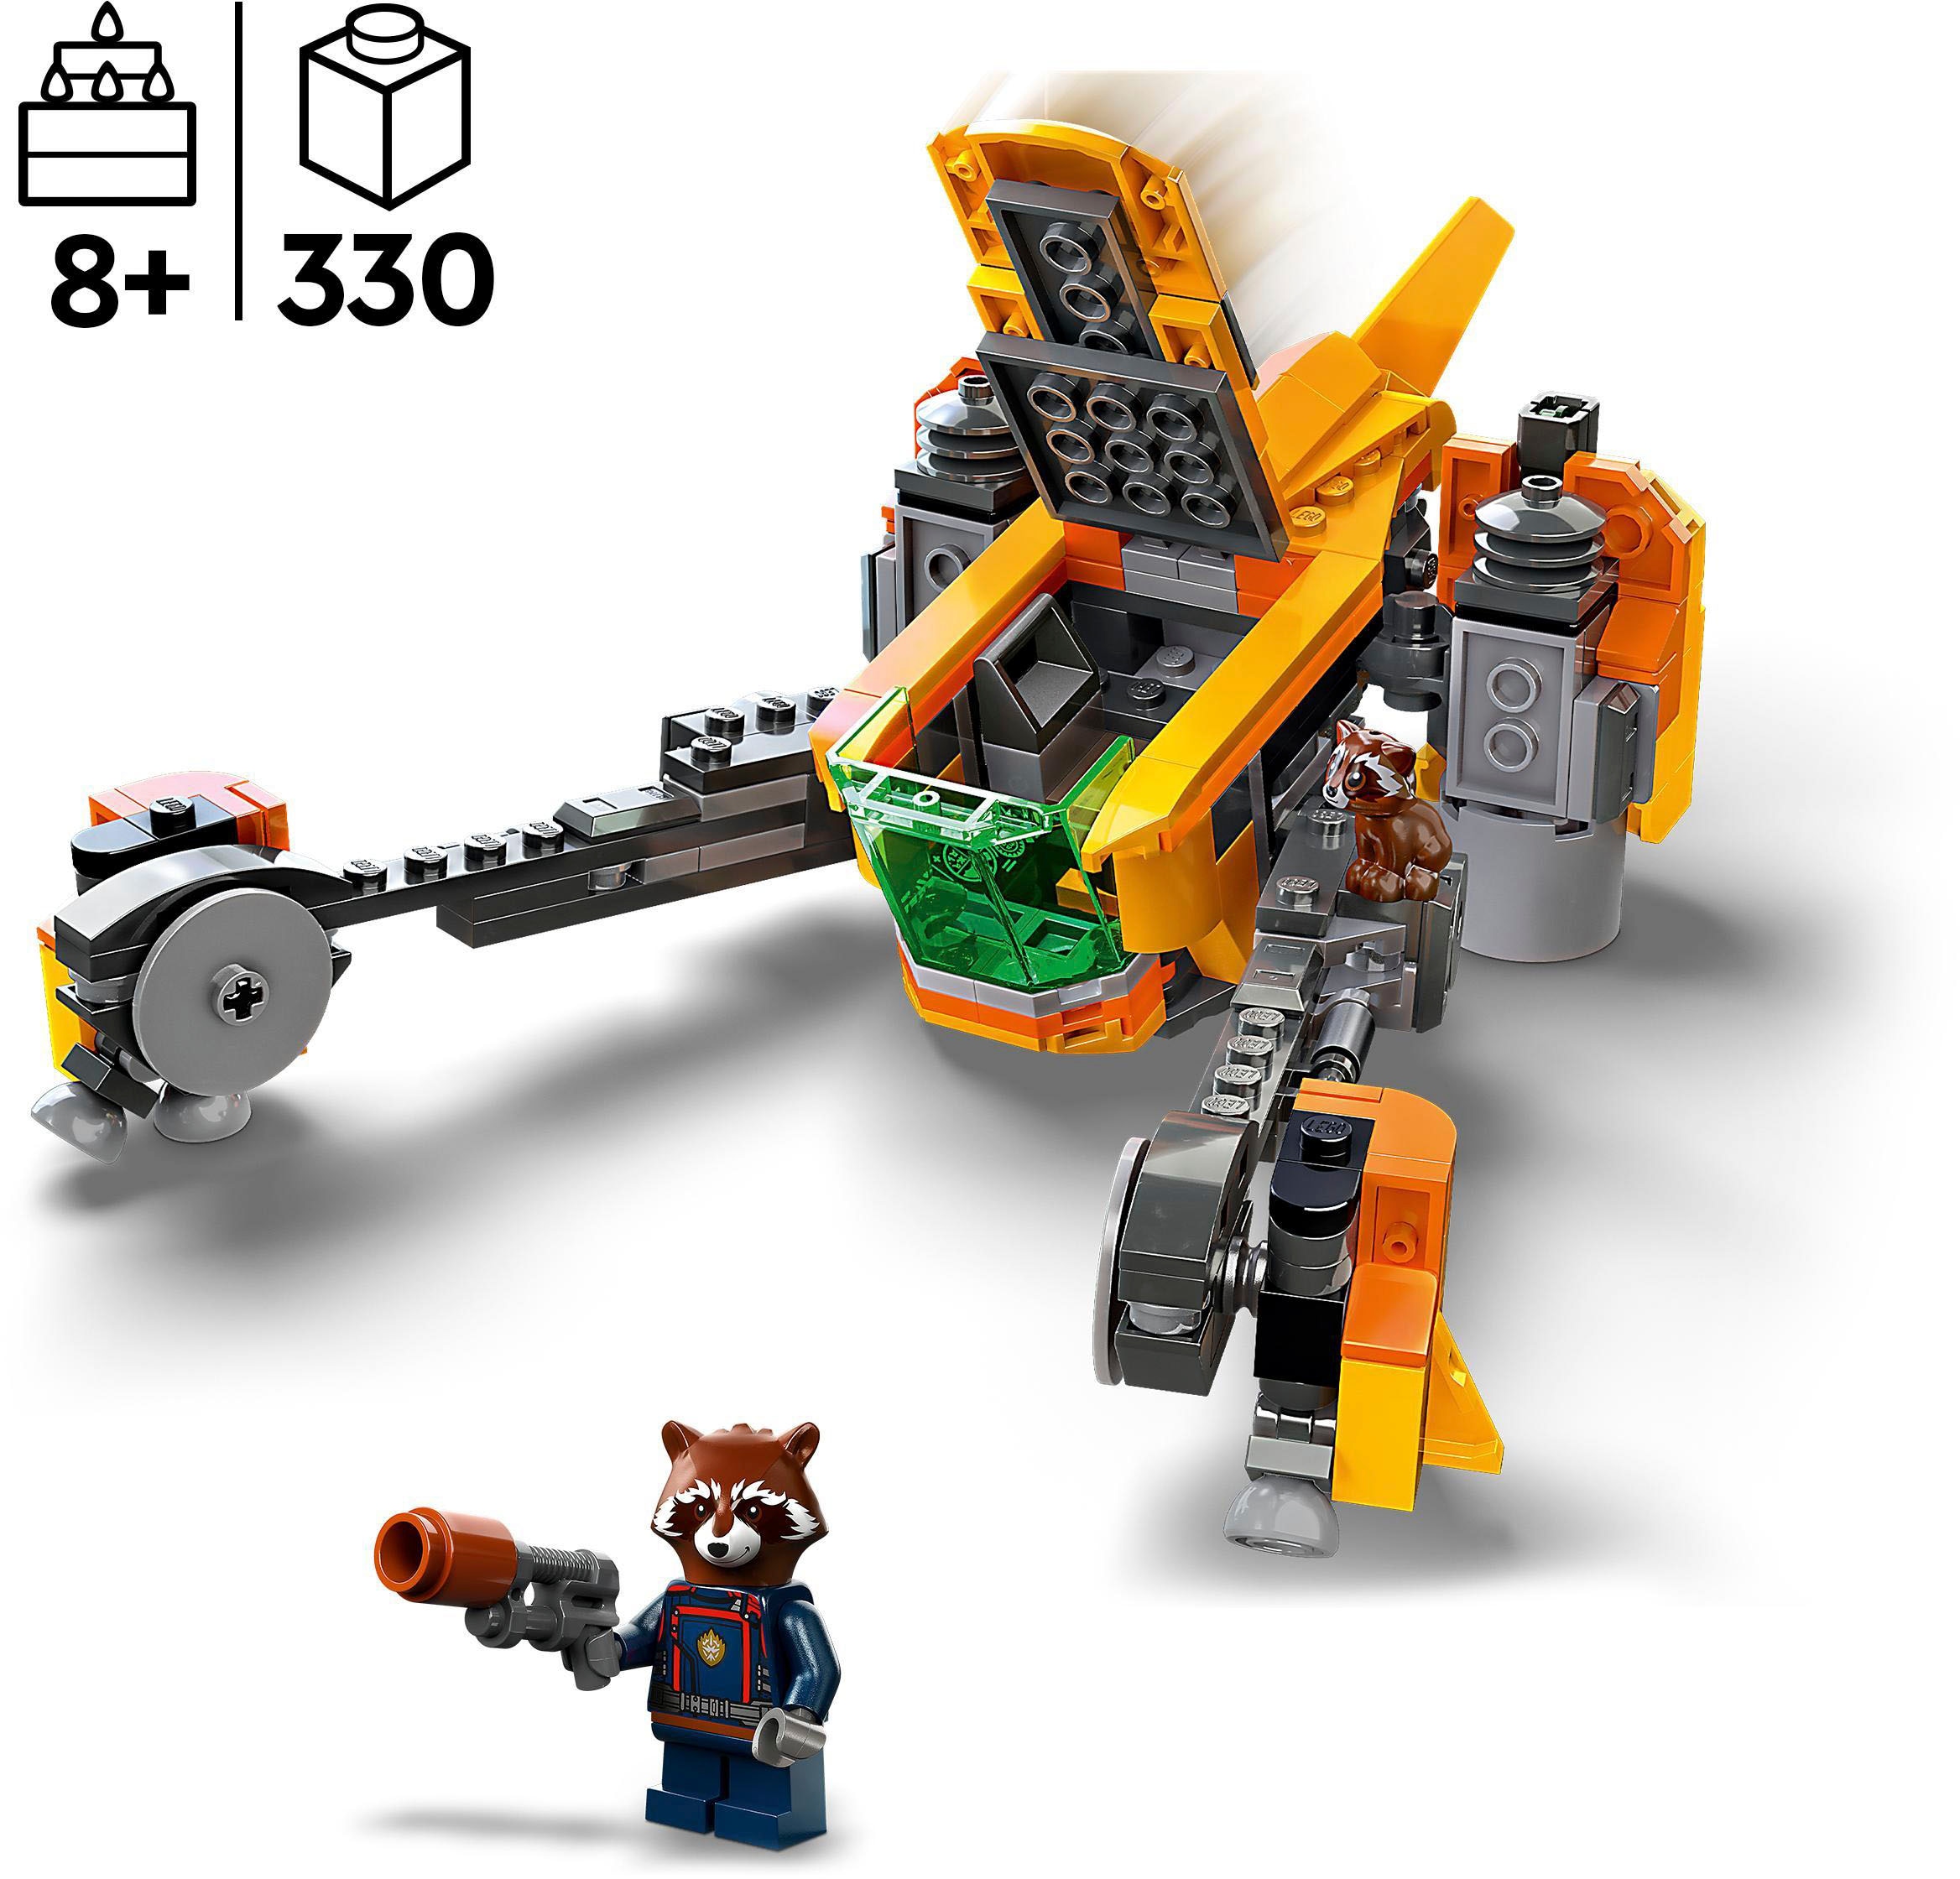 LEGO® Konstruktionsspielsteine »Baby Rockets Schiff (76254), LEGO® Marvel«, (330 St.), Made in Europe